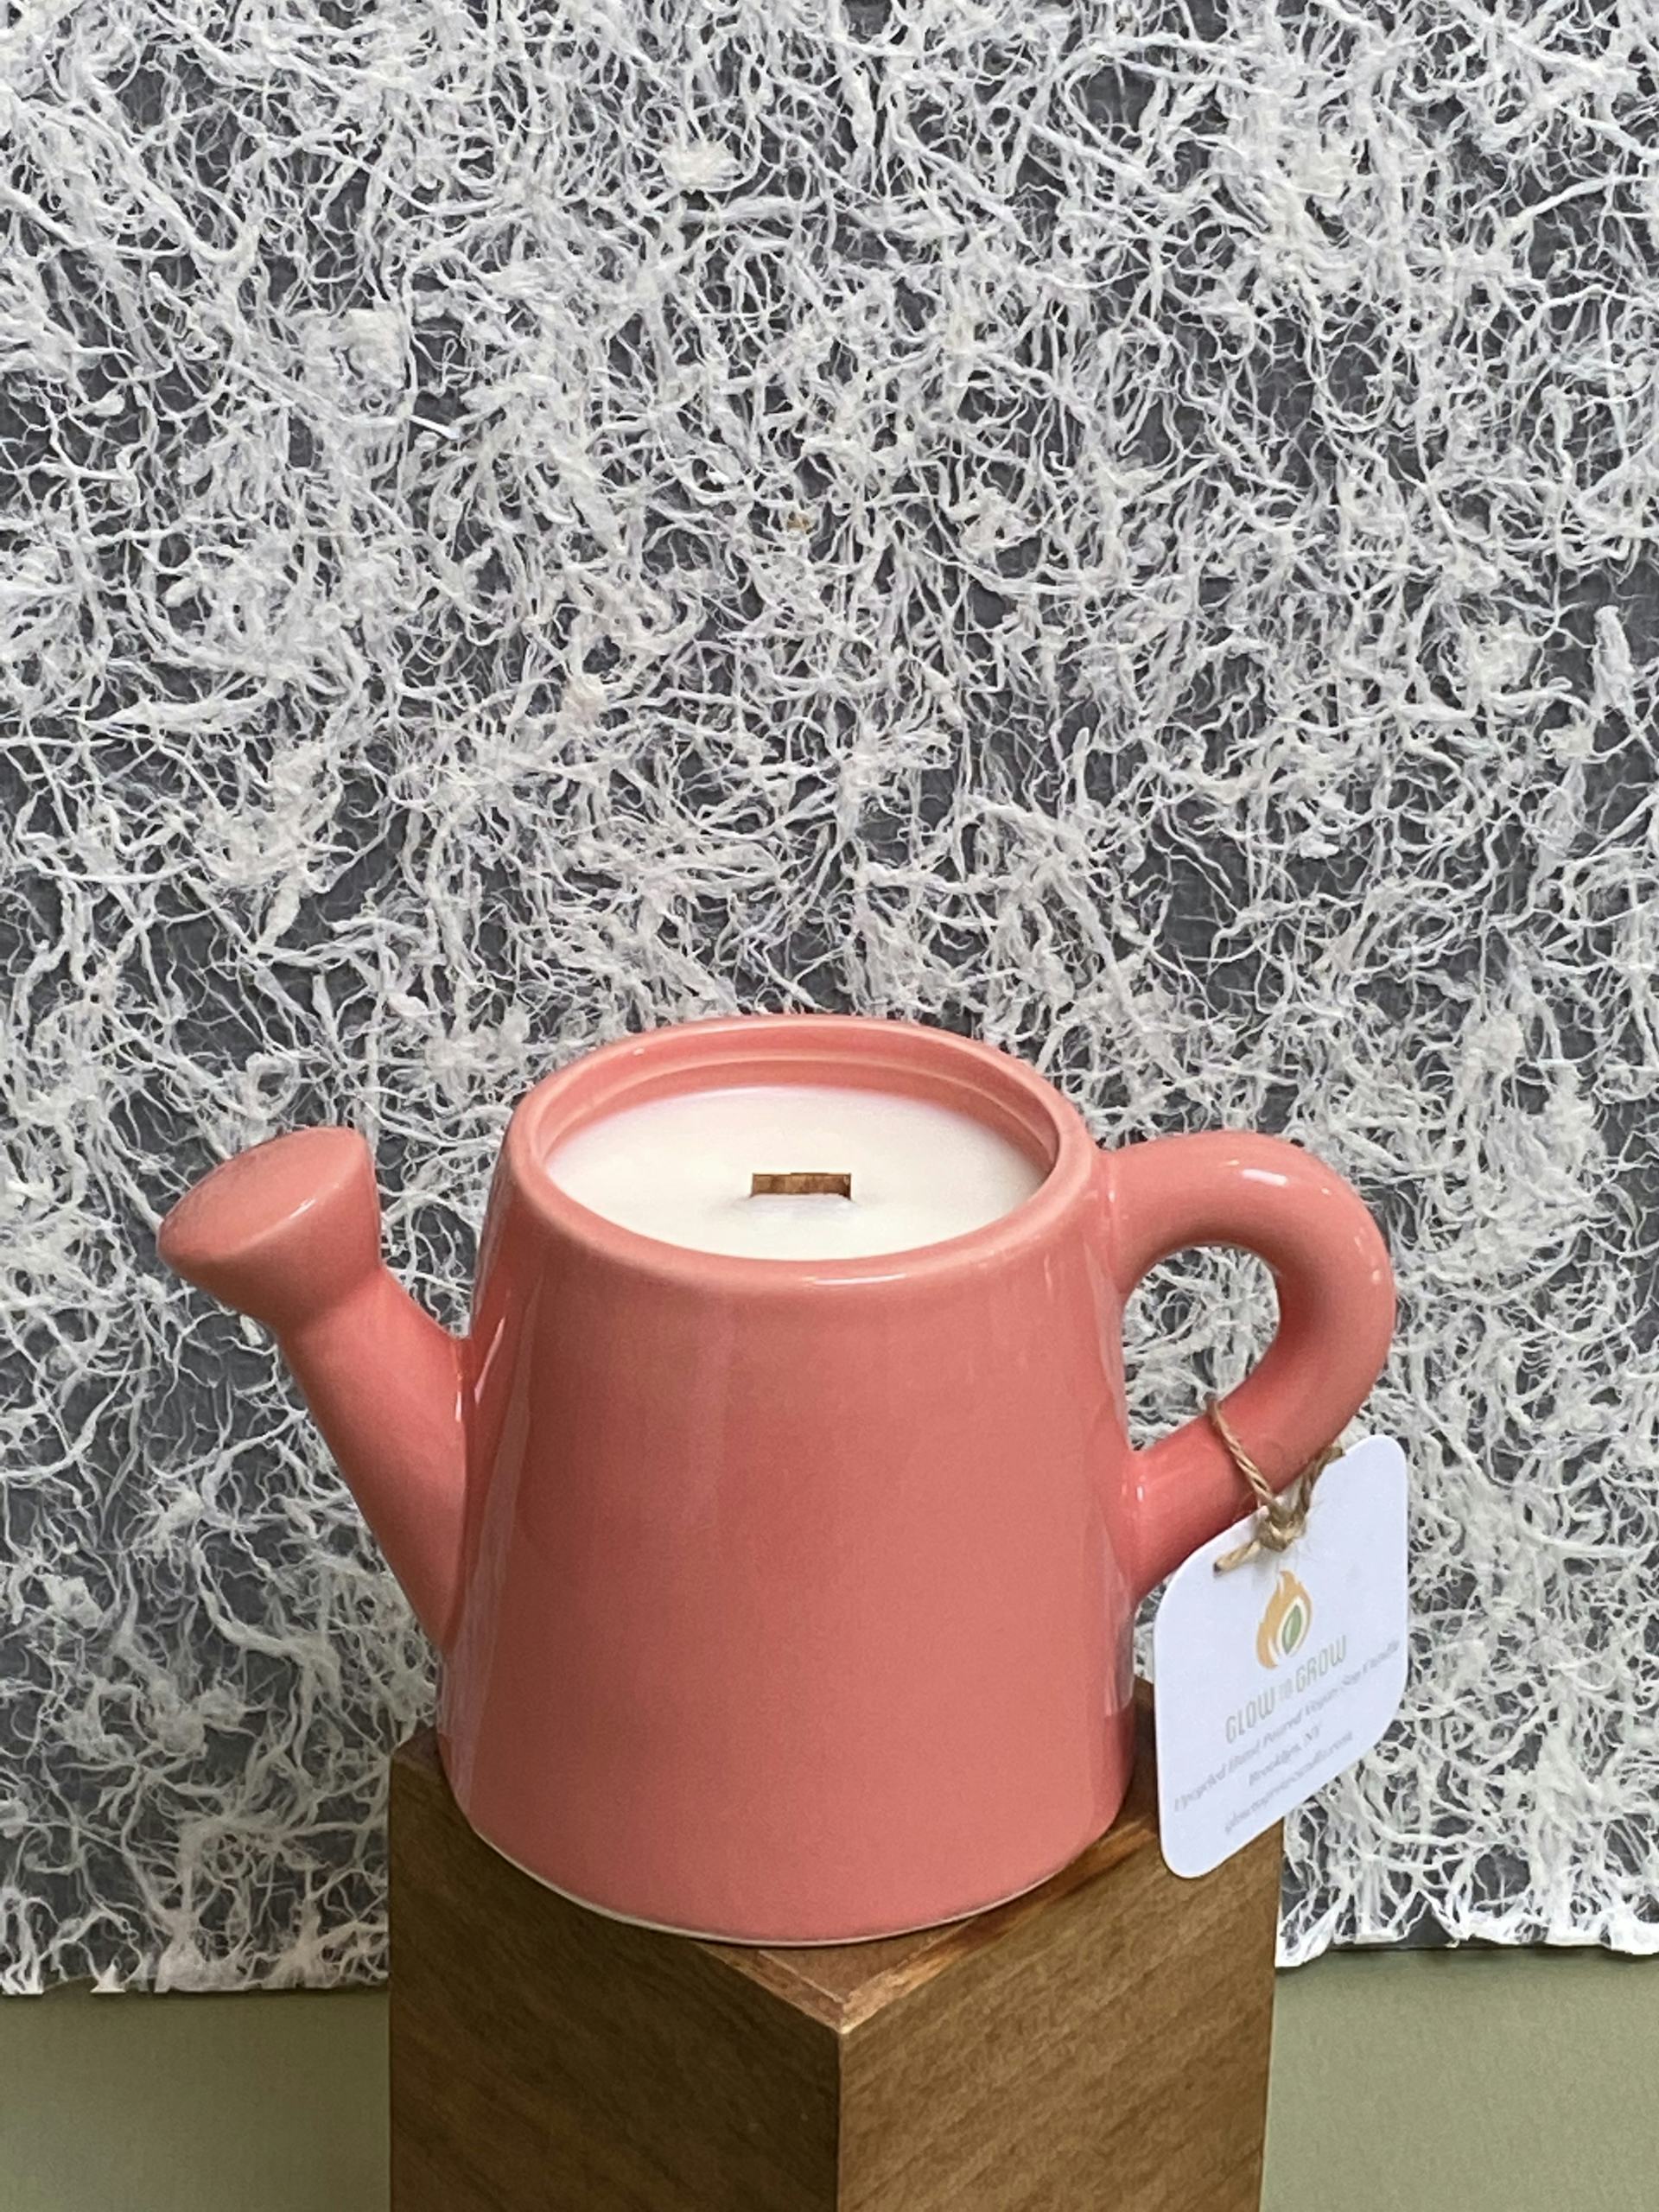 Product Image: Seasonal Spring Candle - Large